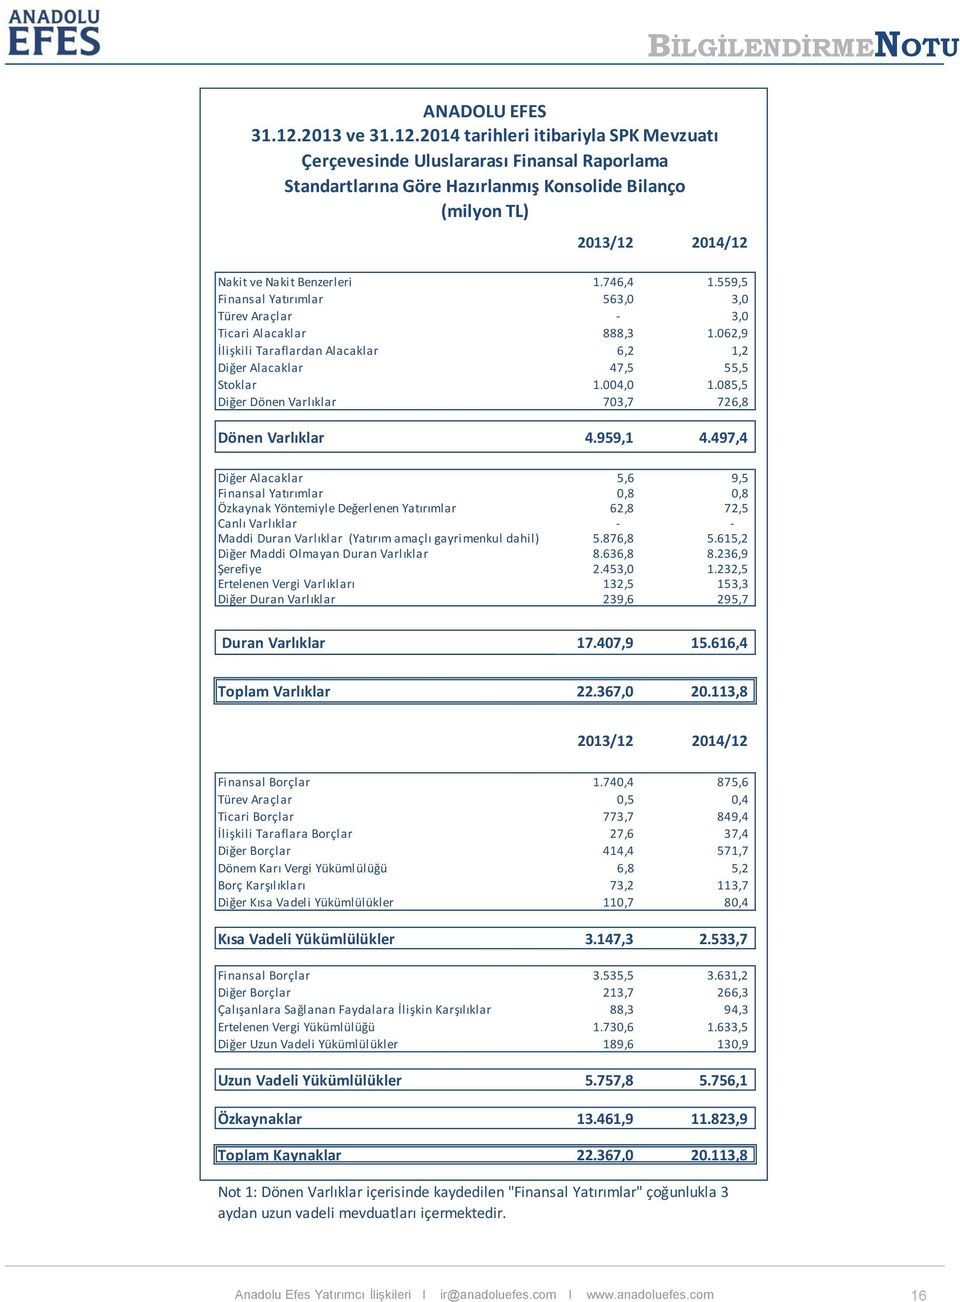 2014 tarihleri itibariyla SPK Mevzuatı Çerçevesinde Uluslararası Finansal Raporlama Standartlarına Göre Hazırlanmış Konsolide Bilanço (milyon TL) 2013/12 2014/12 Nakit ve Nakit Benzerleri 1.746,4 1.